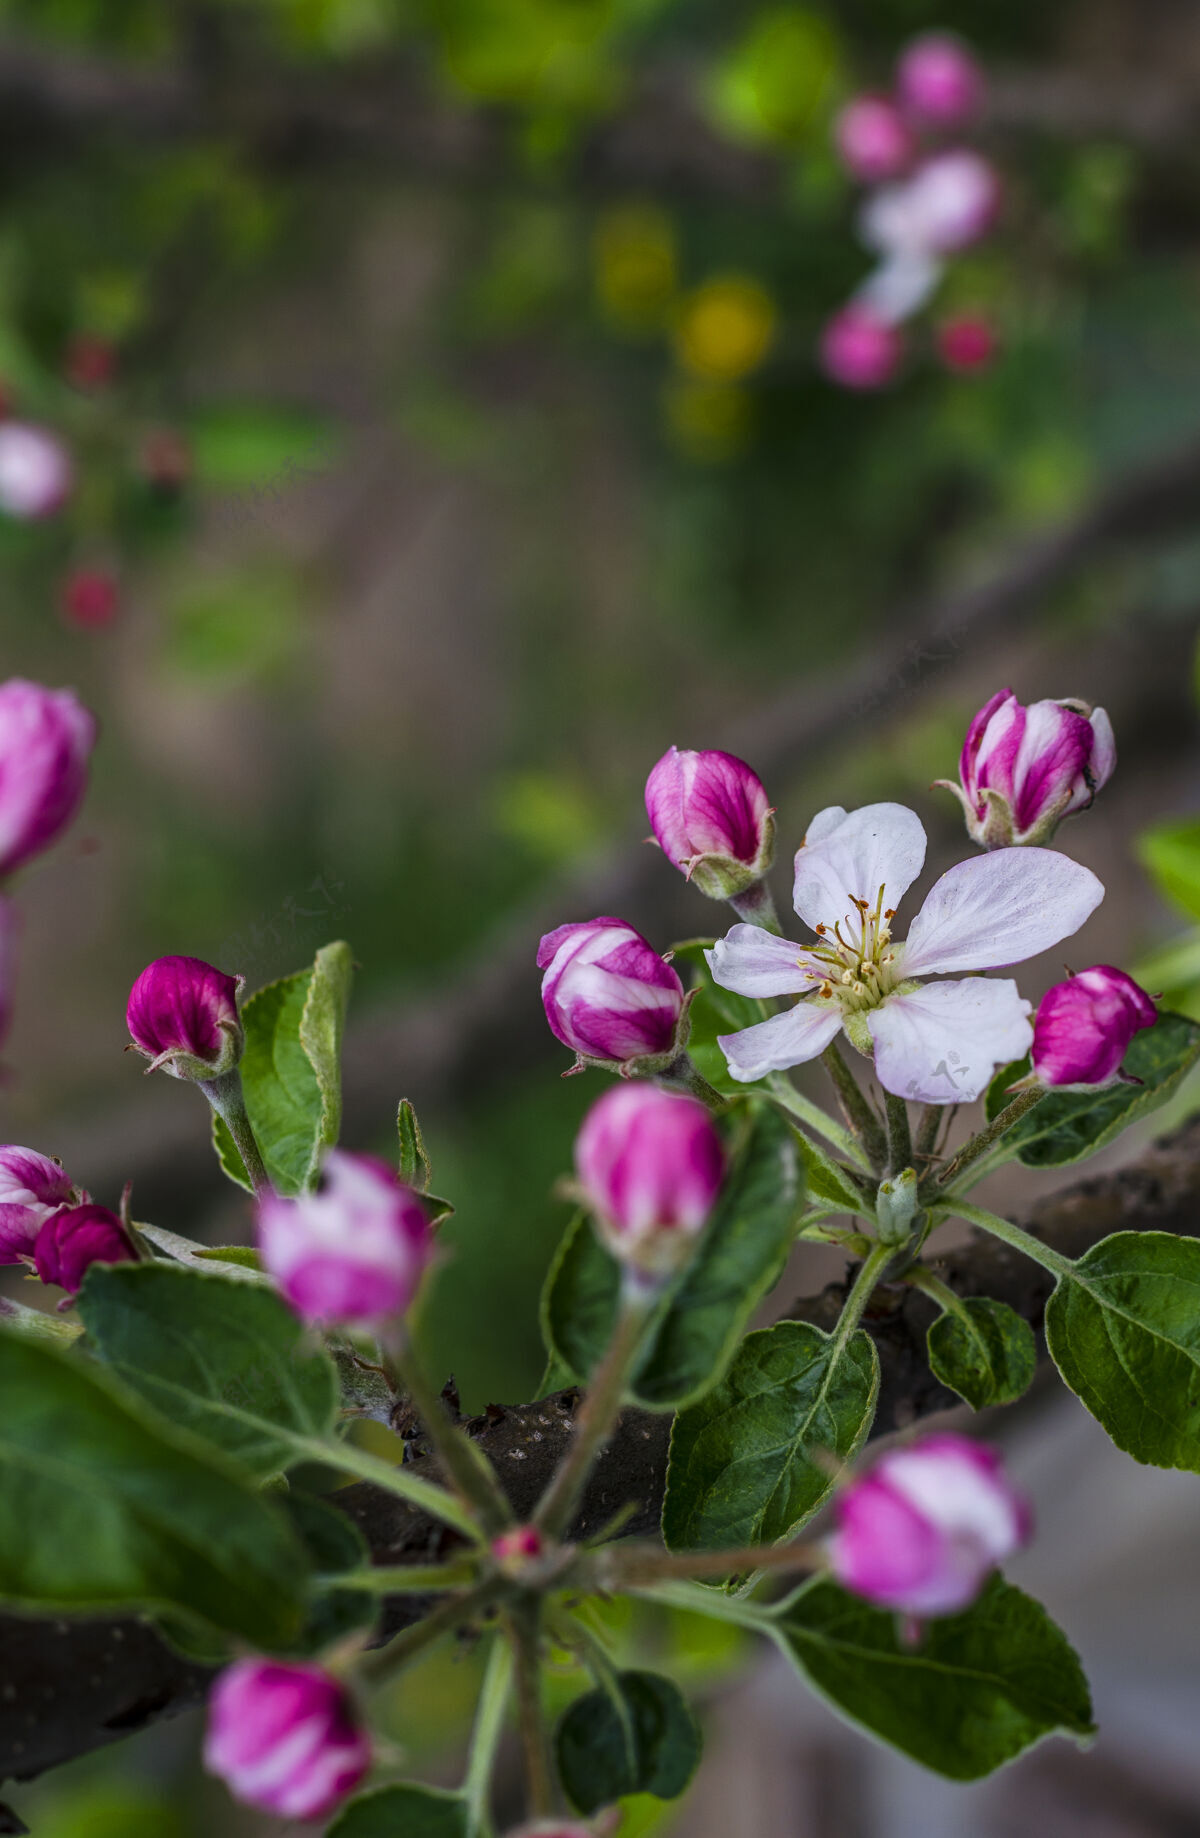 植物学春天 苹果树的枝头开花了美丽园艺细节